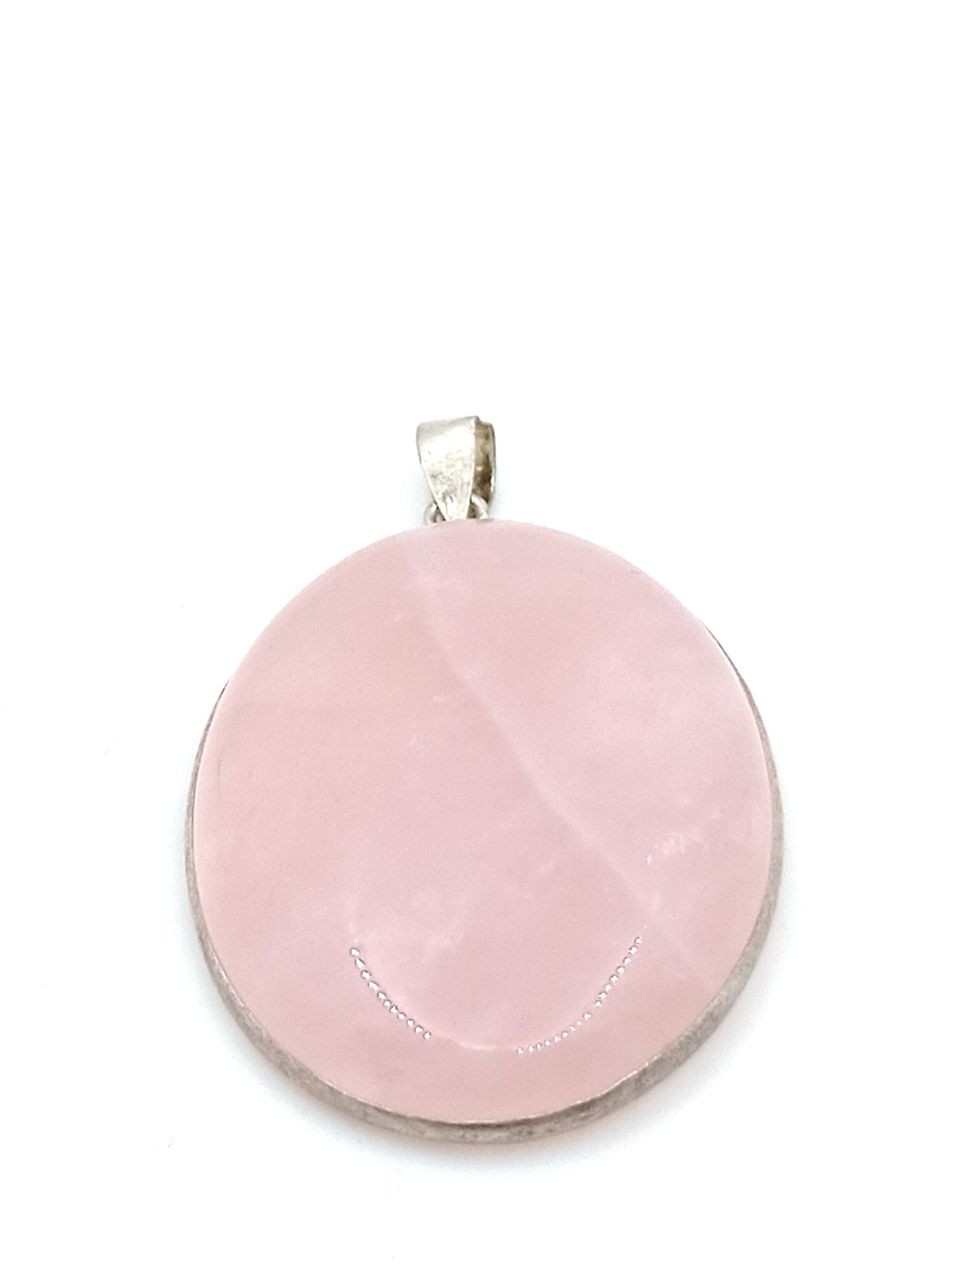 Rose quartz pendant in silver